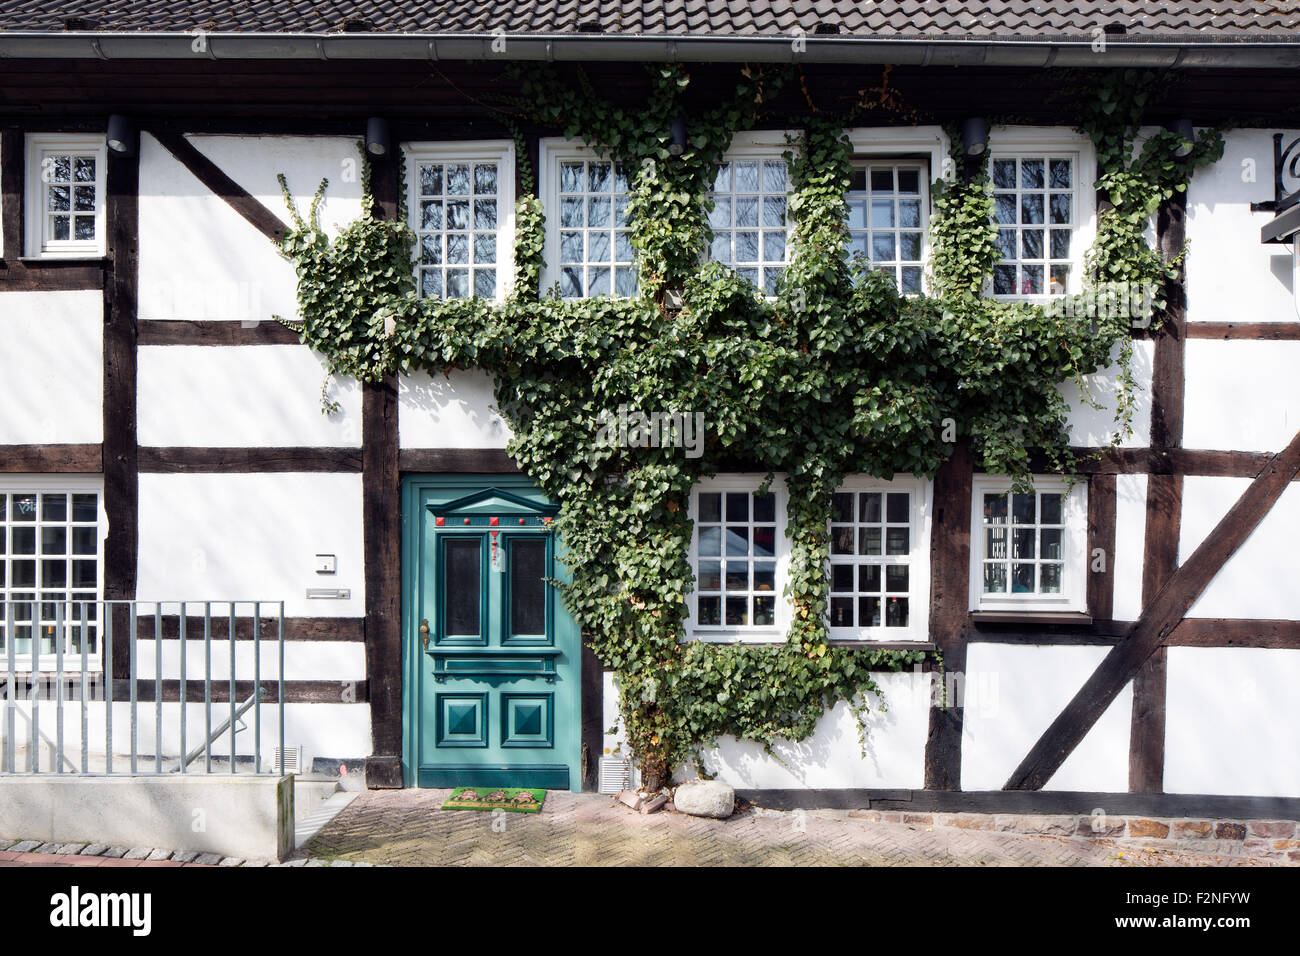 Façade avec porte et fenêtres, maison à colombages Güldener 3235, centre historique, Unna, Nord de la Ruhr, en Rhine-Germany Banque D'Images